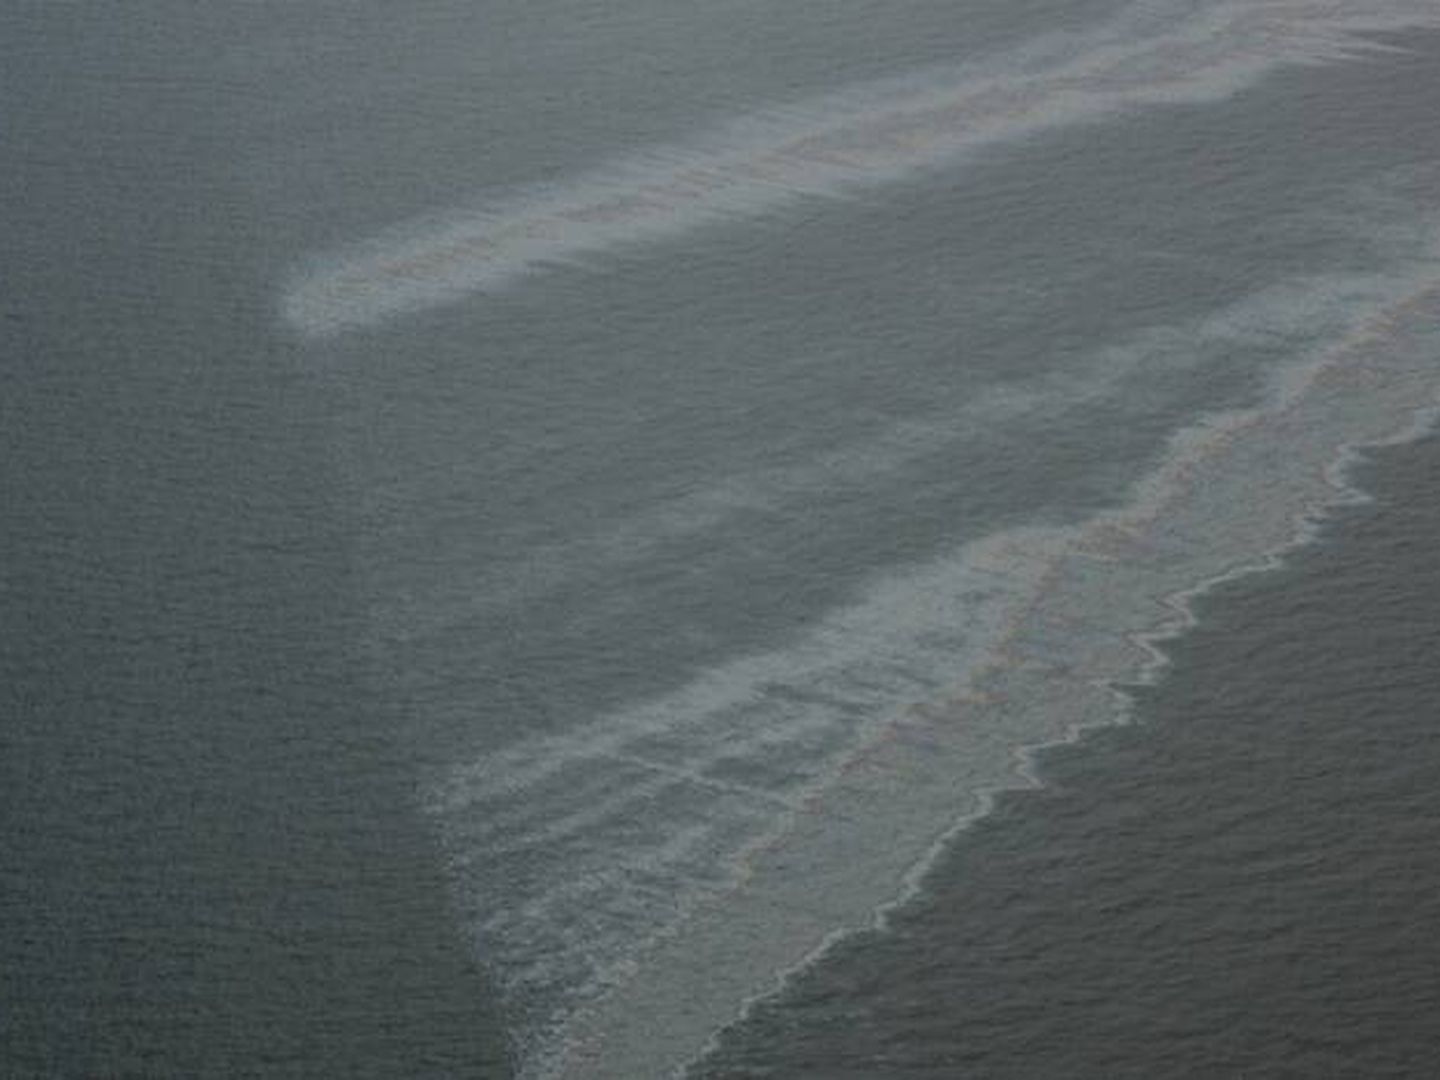 Manchas de aceite y petróleo en la costa caribeña de EEUU. (Ian MacDonald, Florida State University)